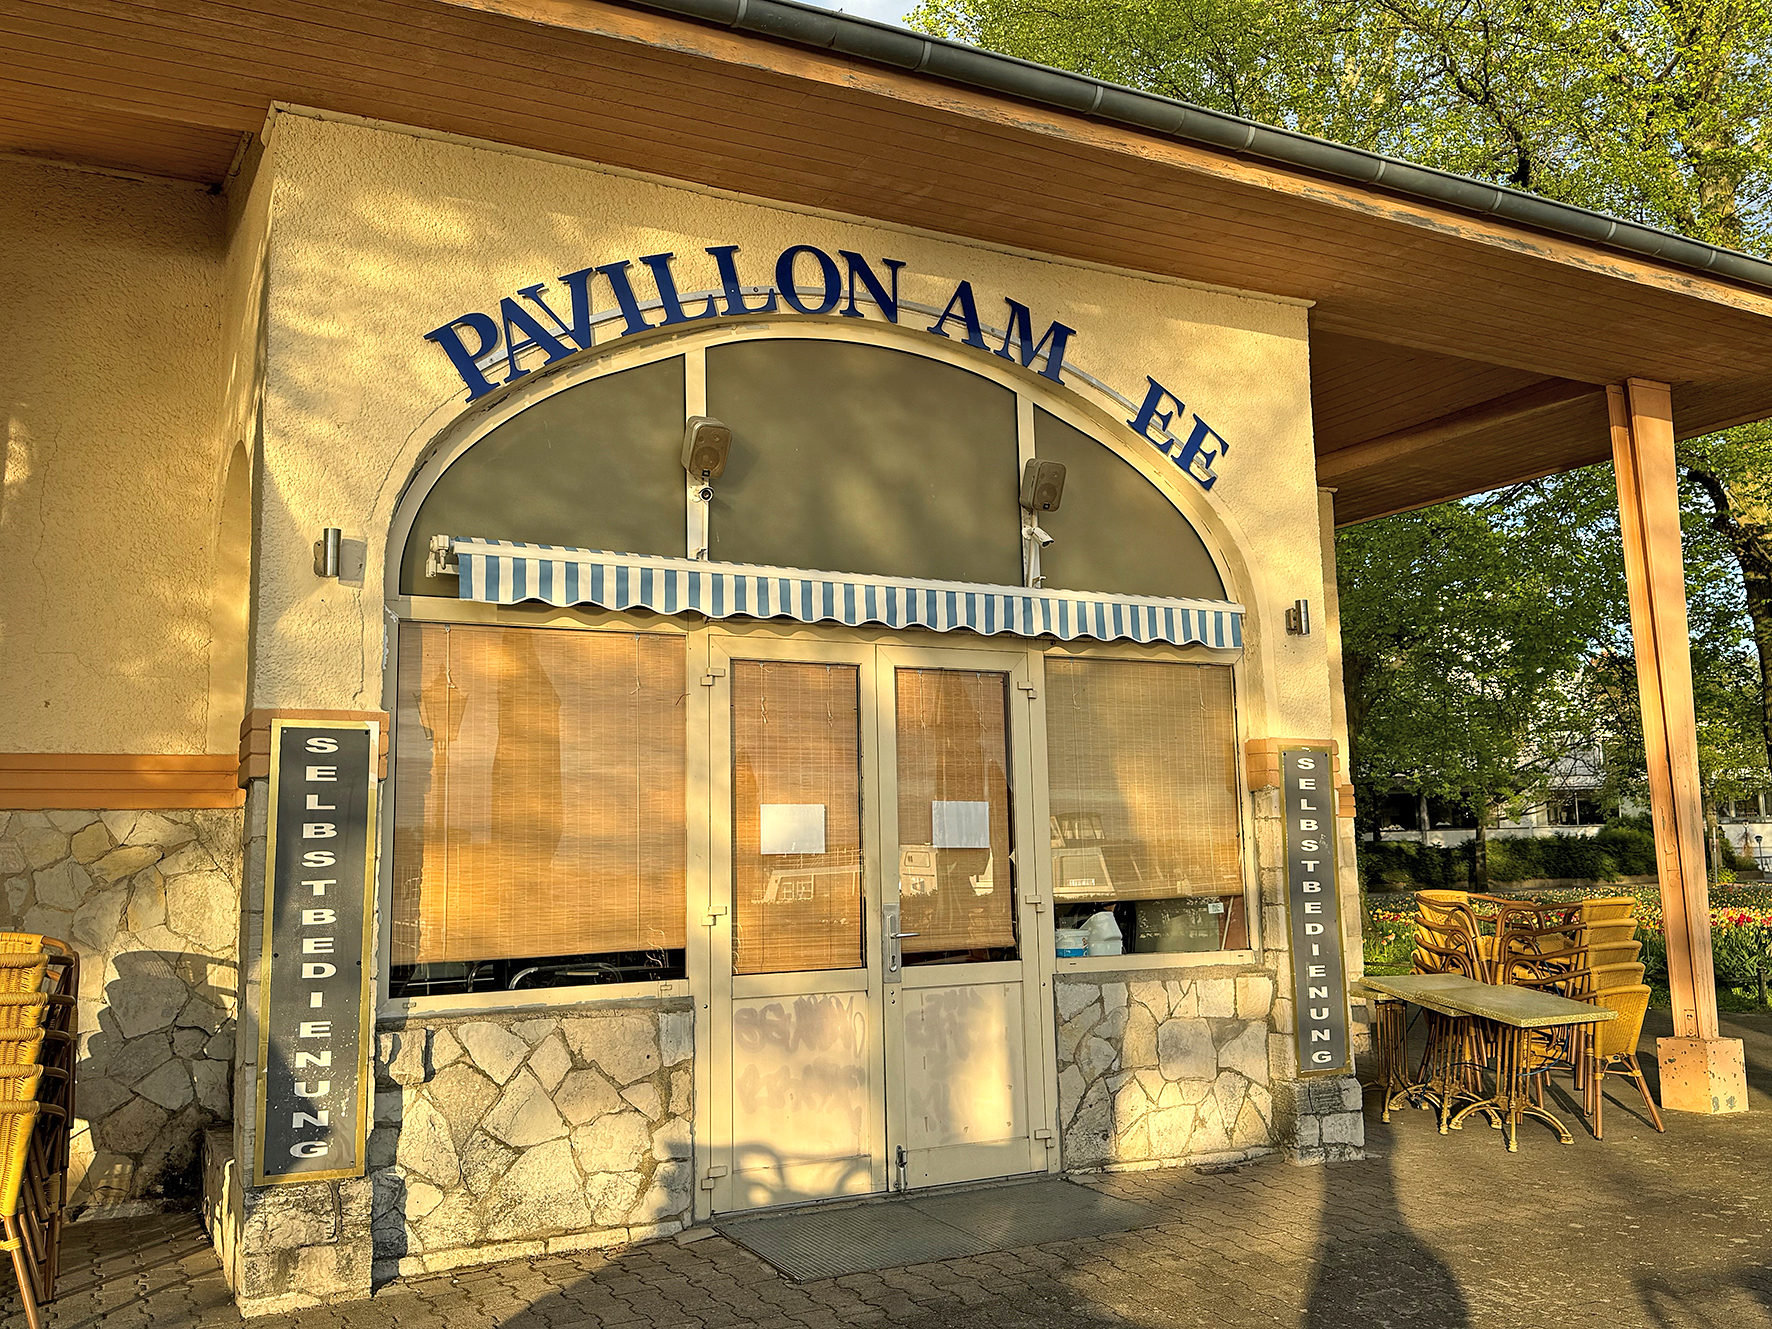 Ein Gebäude mit fehlendem Buchstaben in der Beschriftung der Fassade. Man liest nur "PAVILLON AM EE".